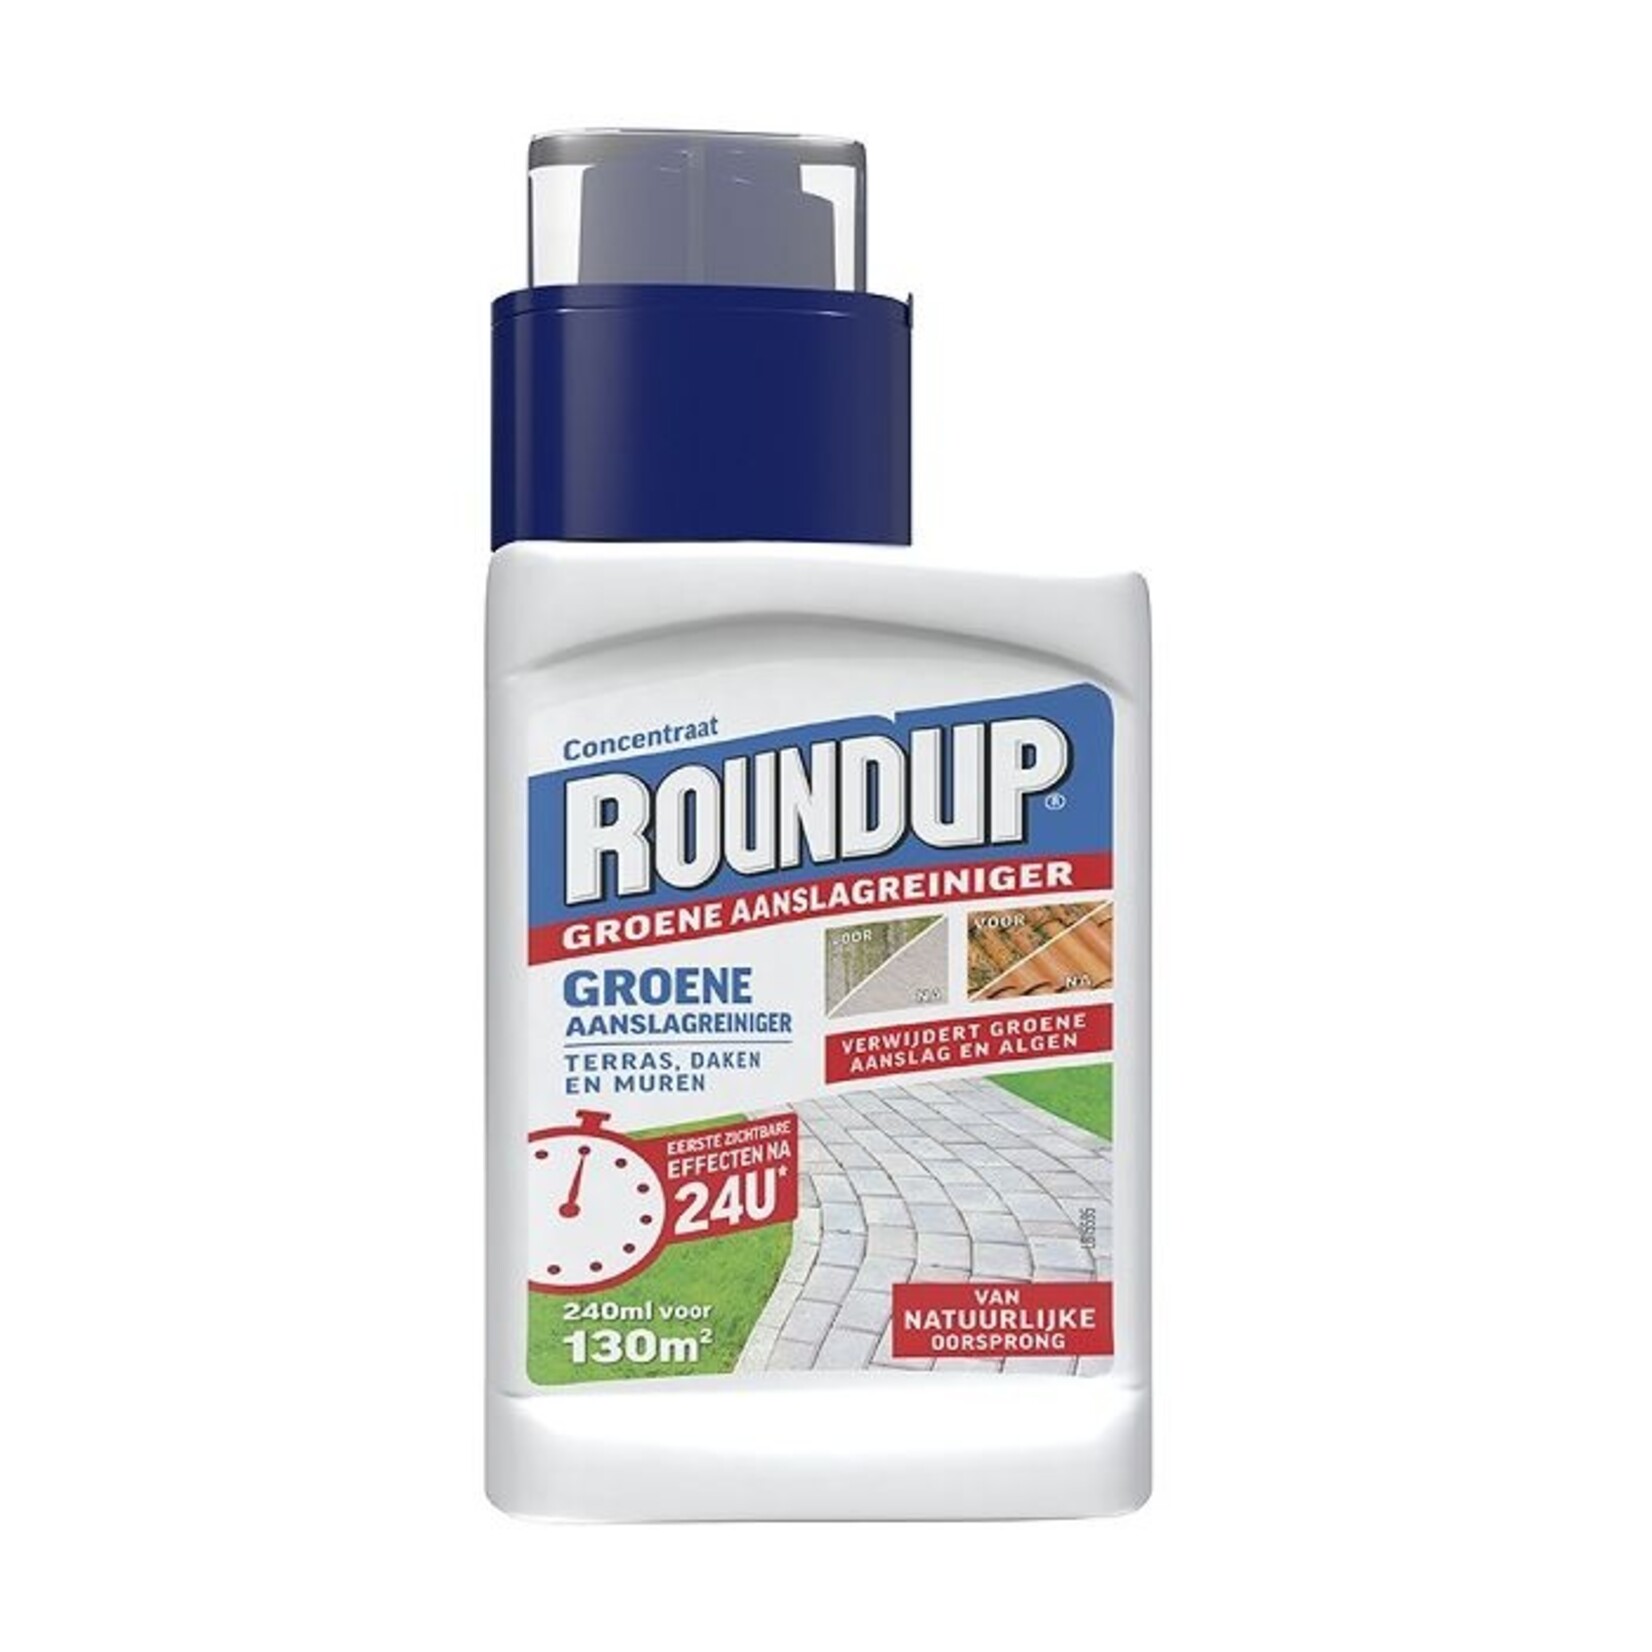 Roundup Groene Aanslag Reiniger concentraat 240 ml